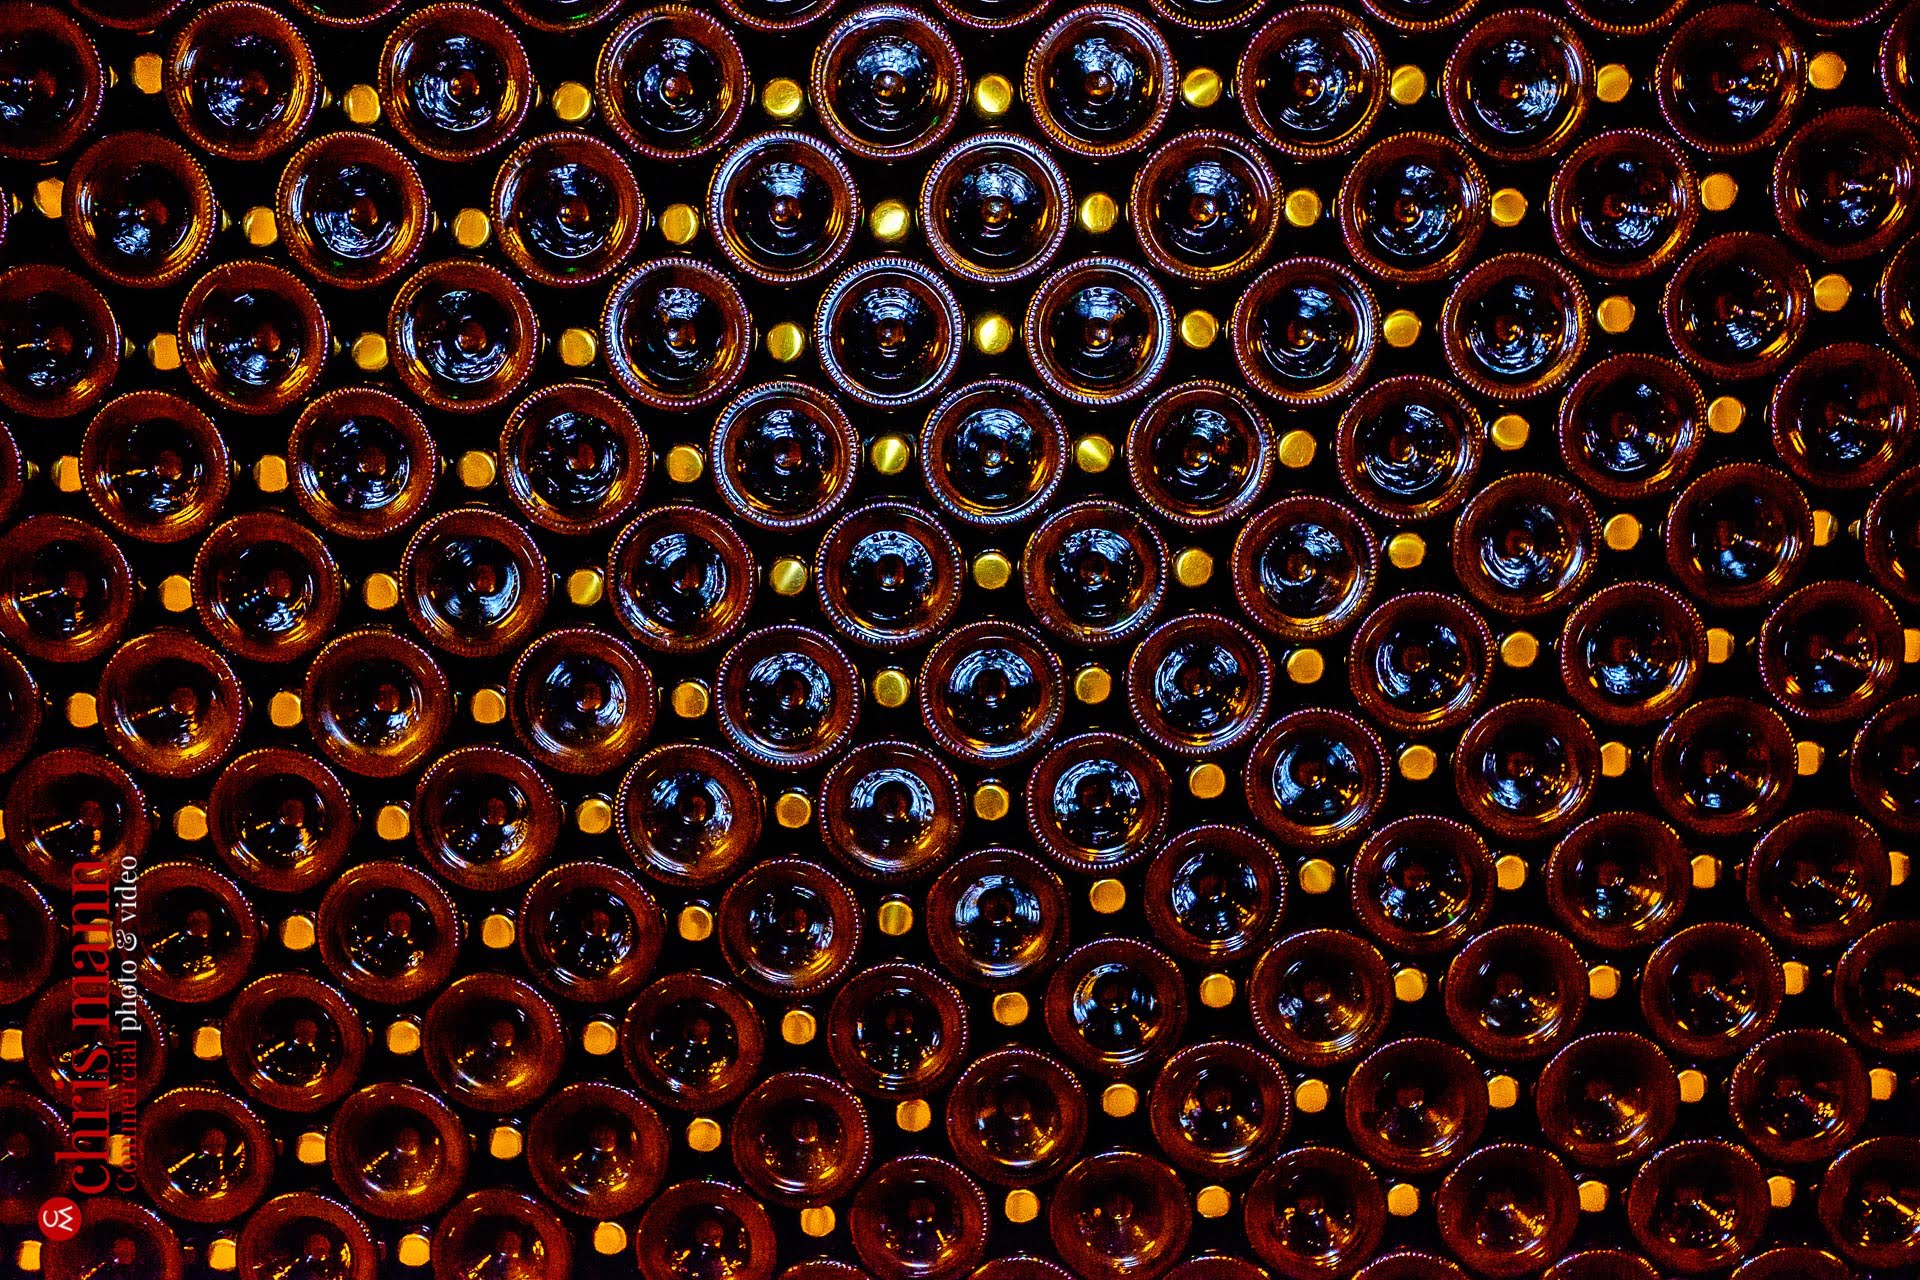 Taittinger champagne bottles maturing in cellar Reims France